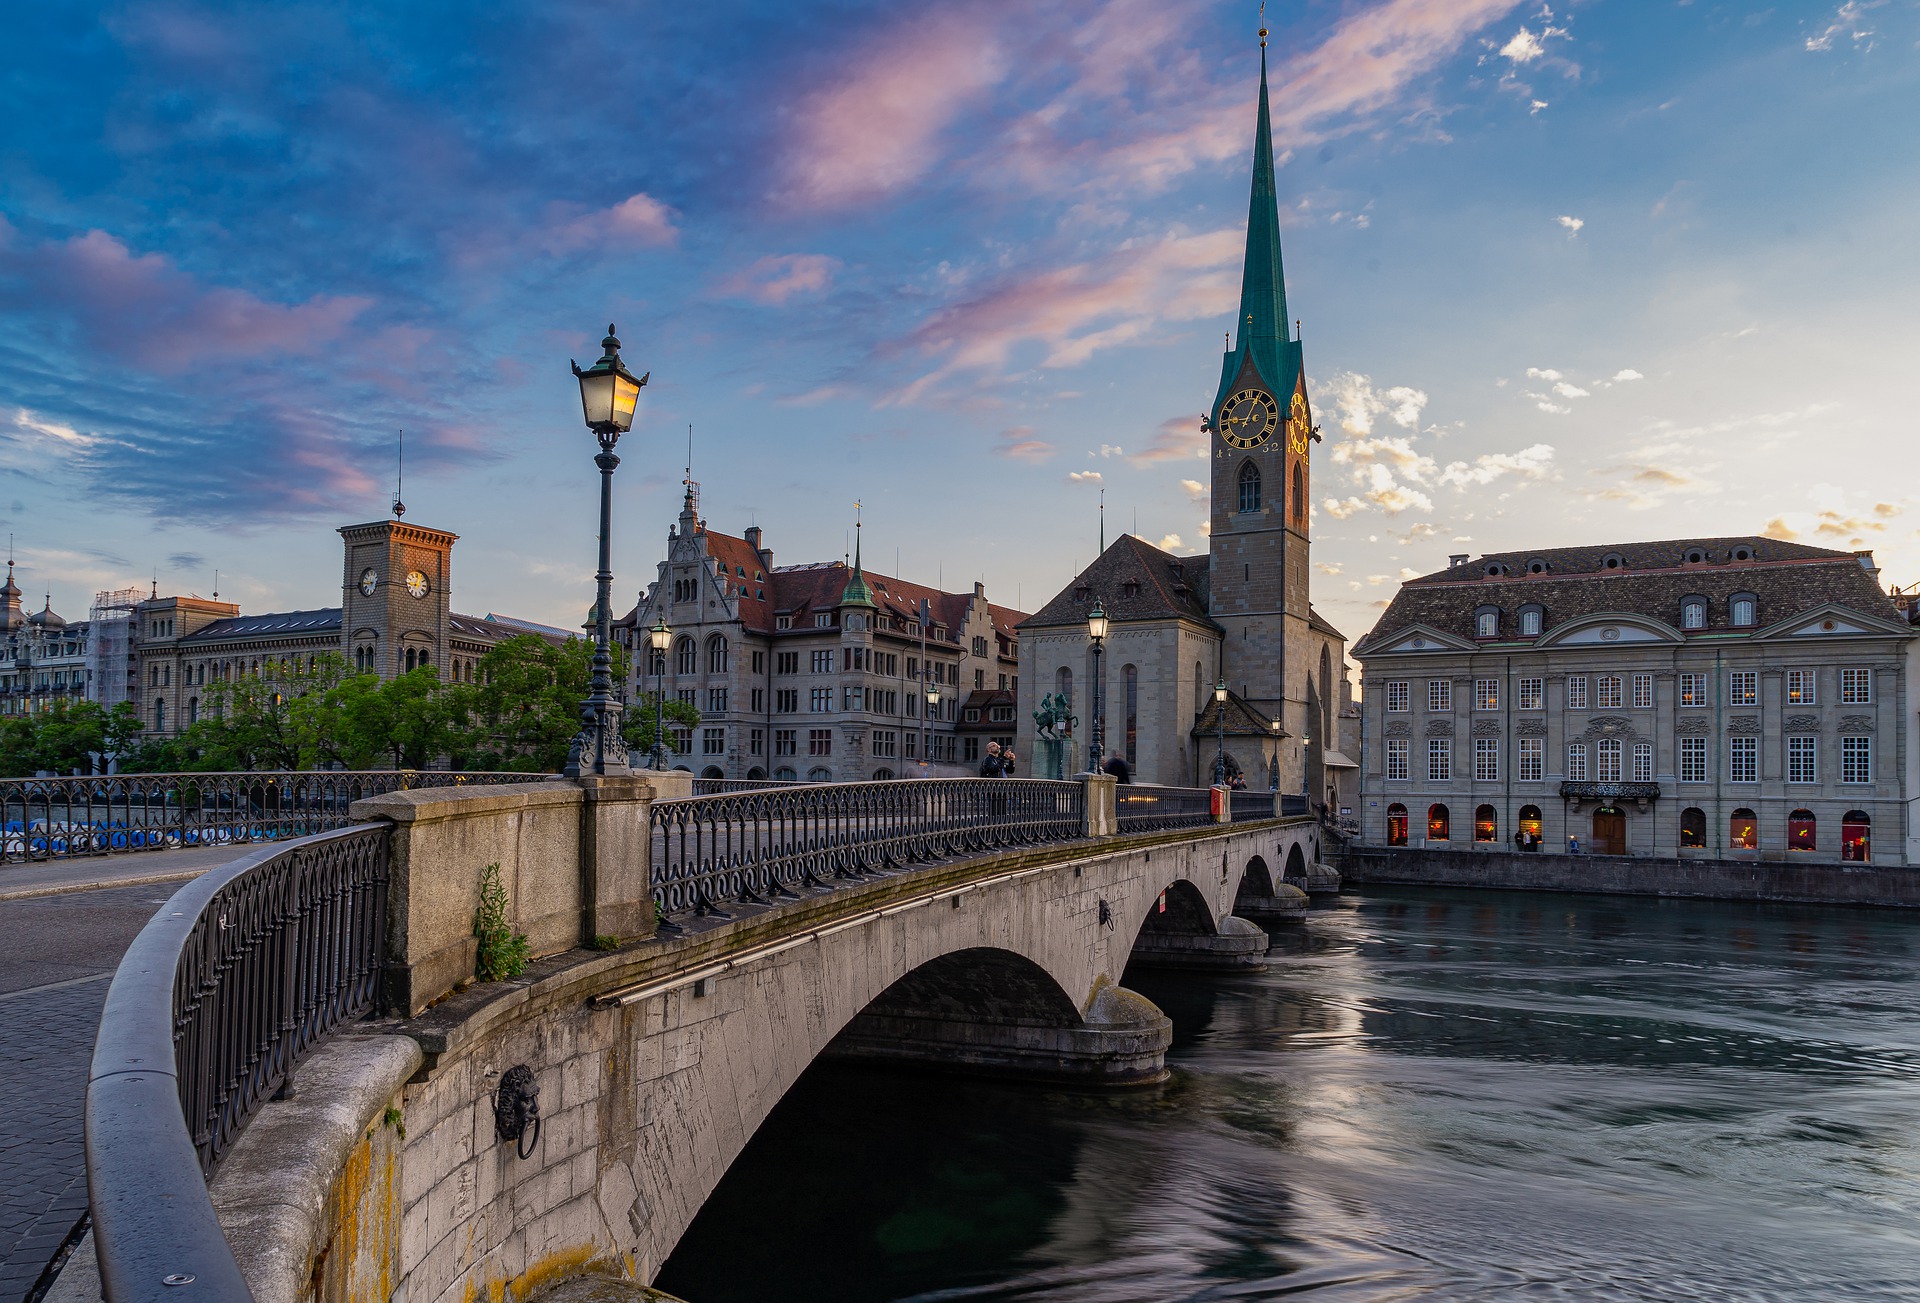 City view of Zurich, Switzerland